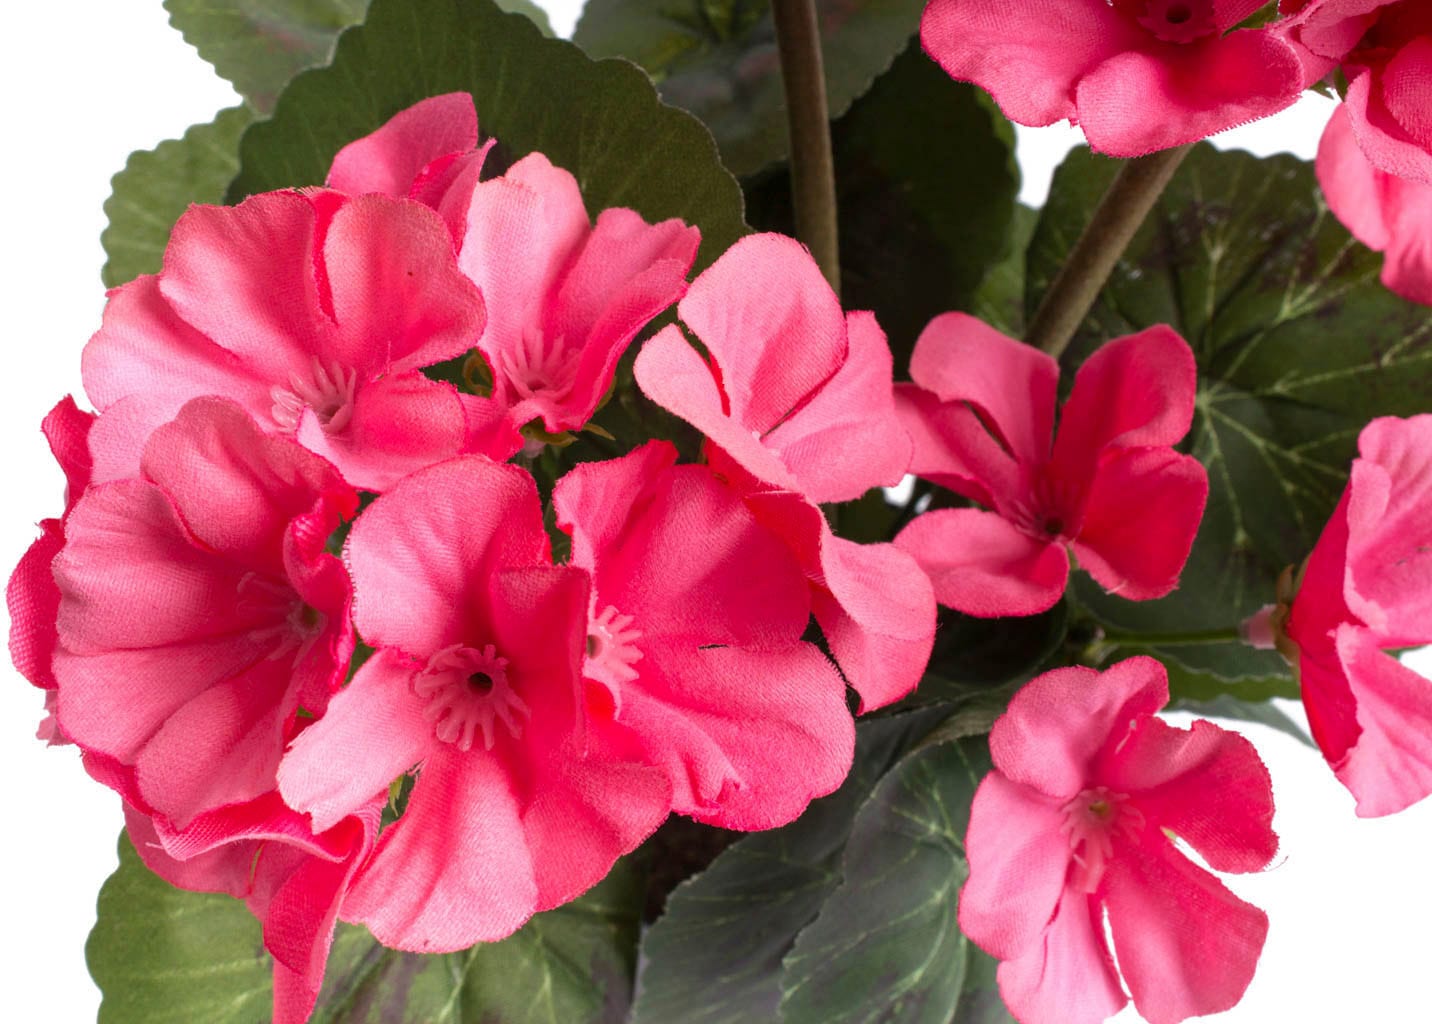 Botanic-Haus Kunstblume »Geranienbusch mit 6 Blütenköpfen« günstig kaufen